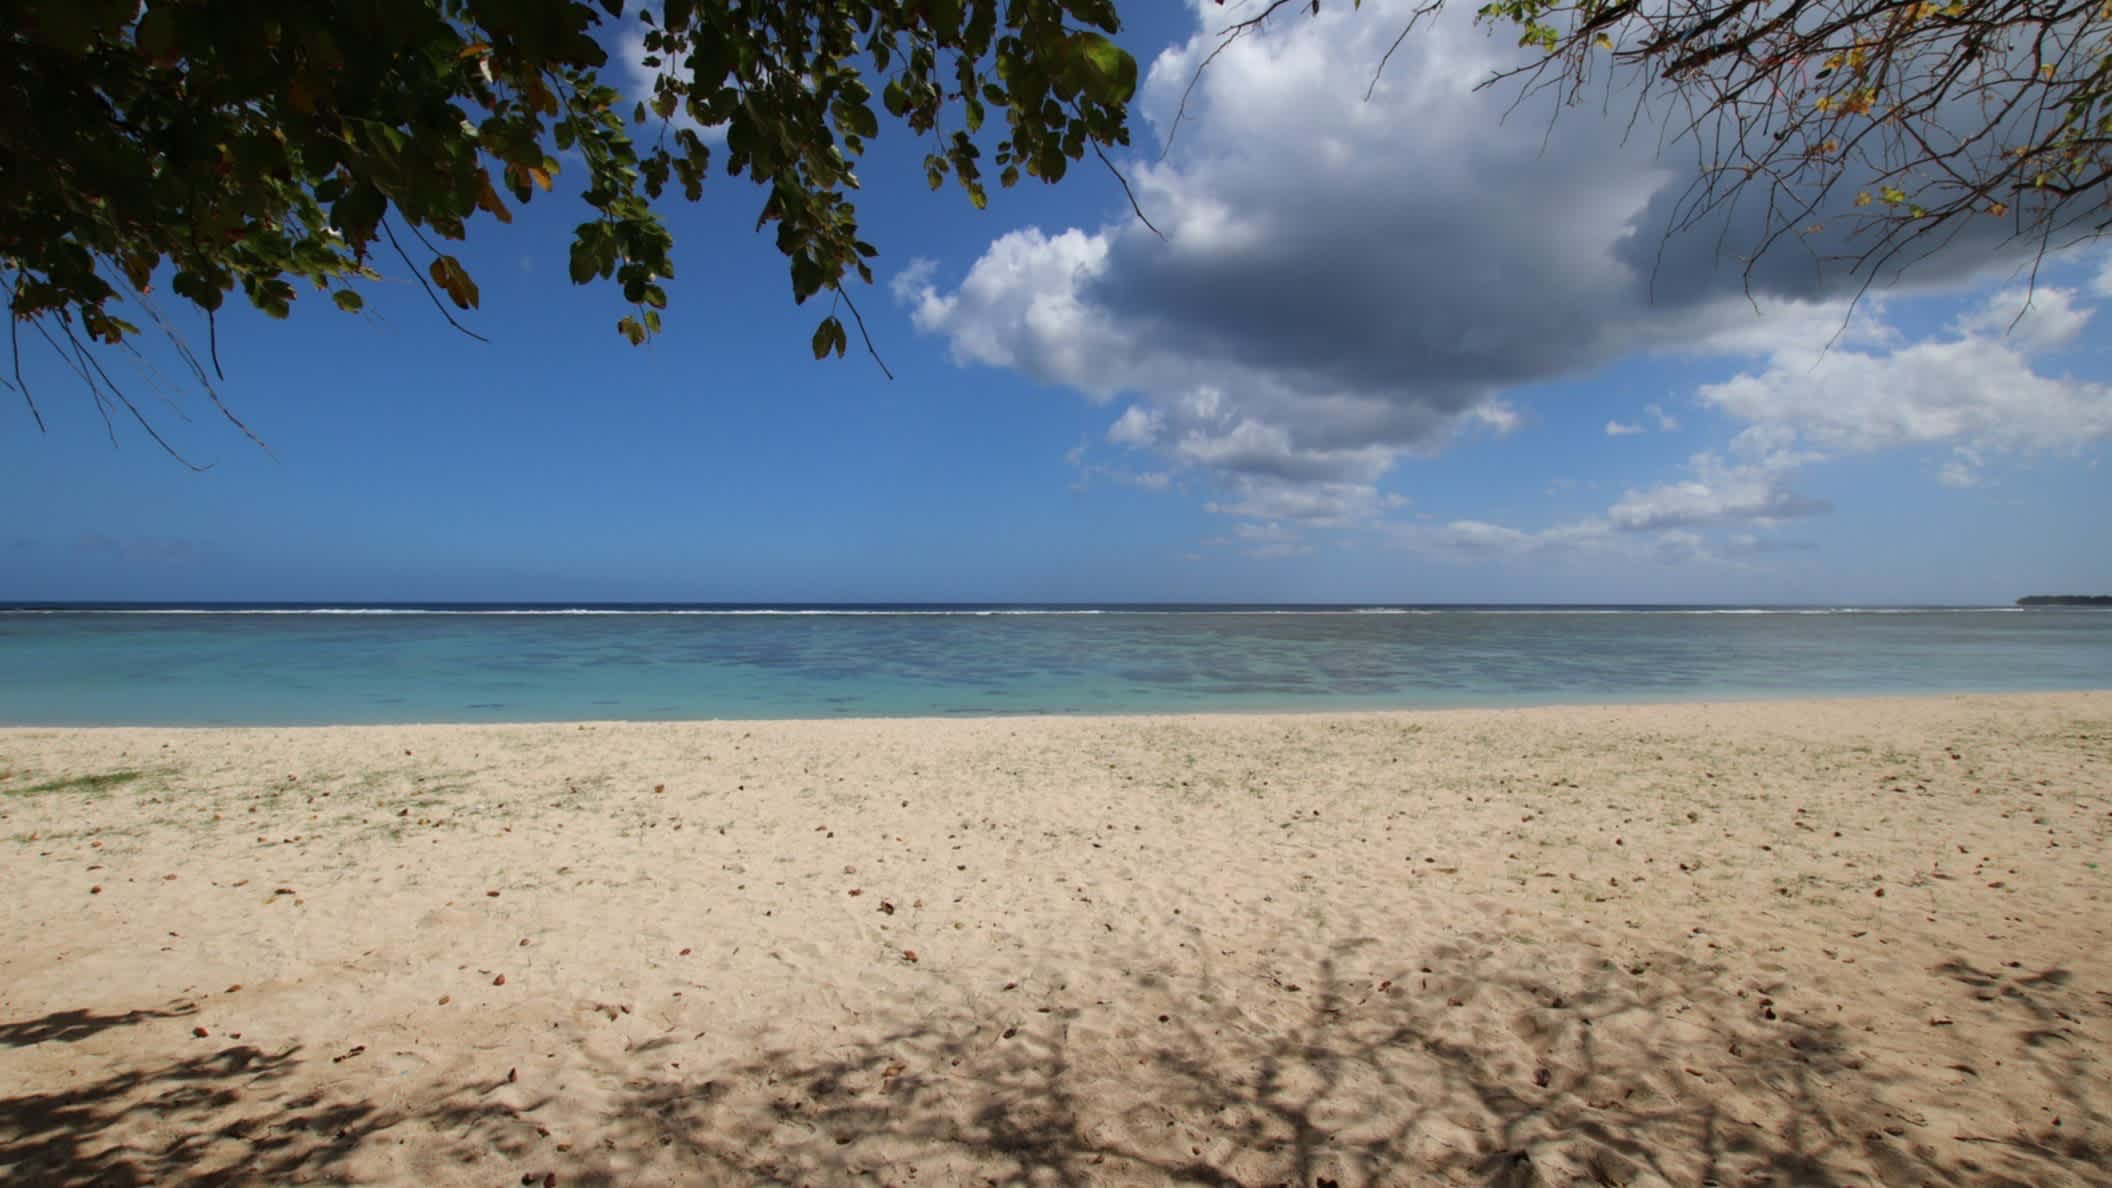 Plage de sable ombragée au bord de la mer, Plage de St Felix, Ile Maurice